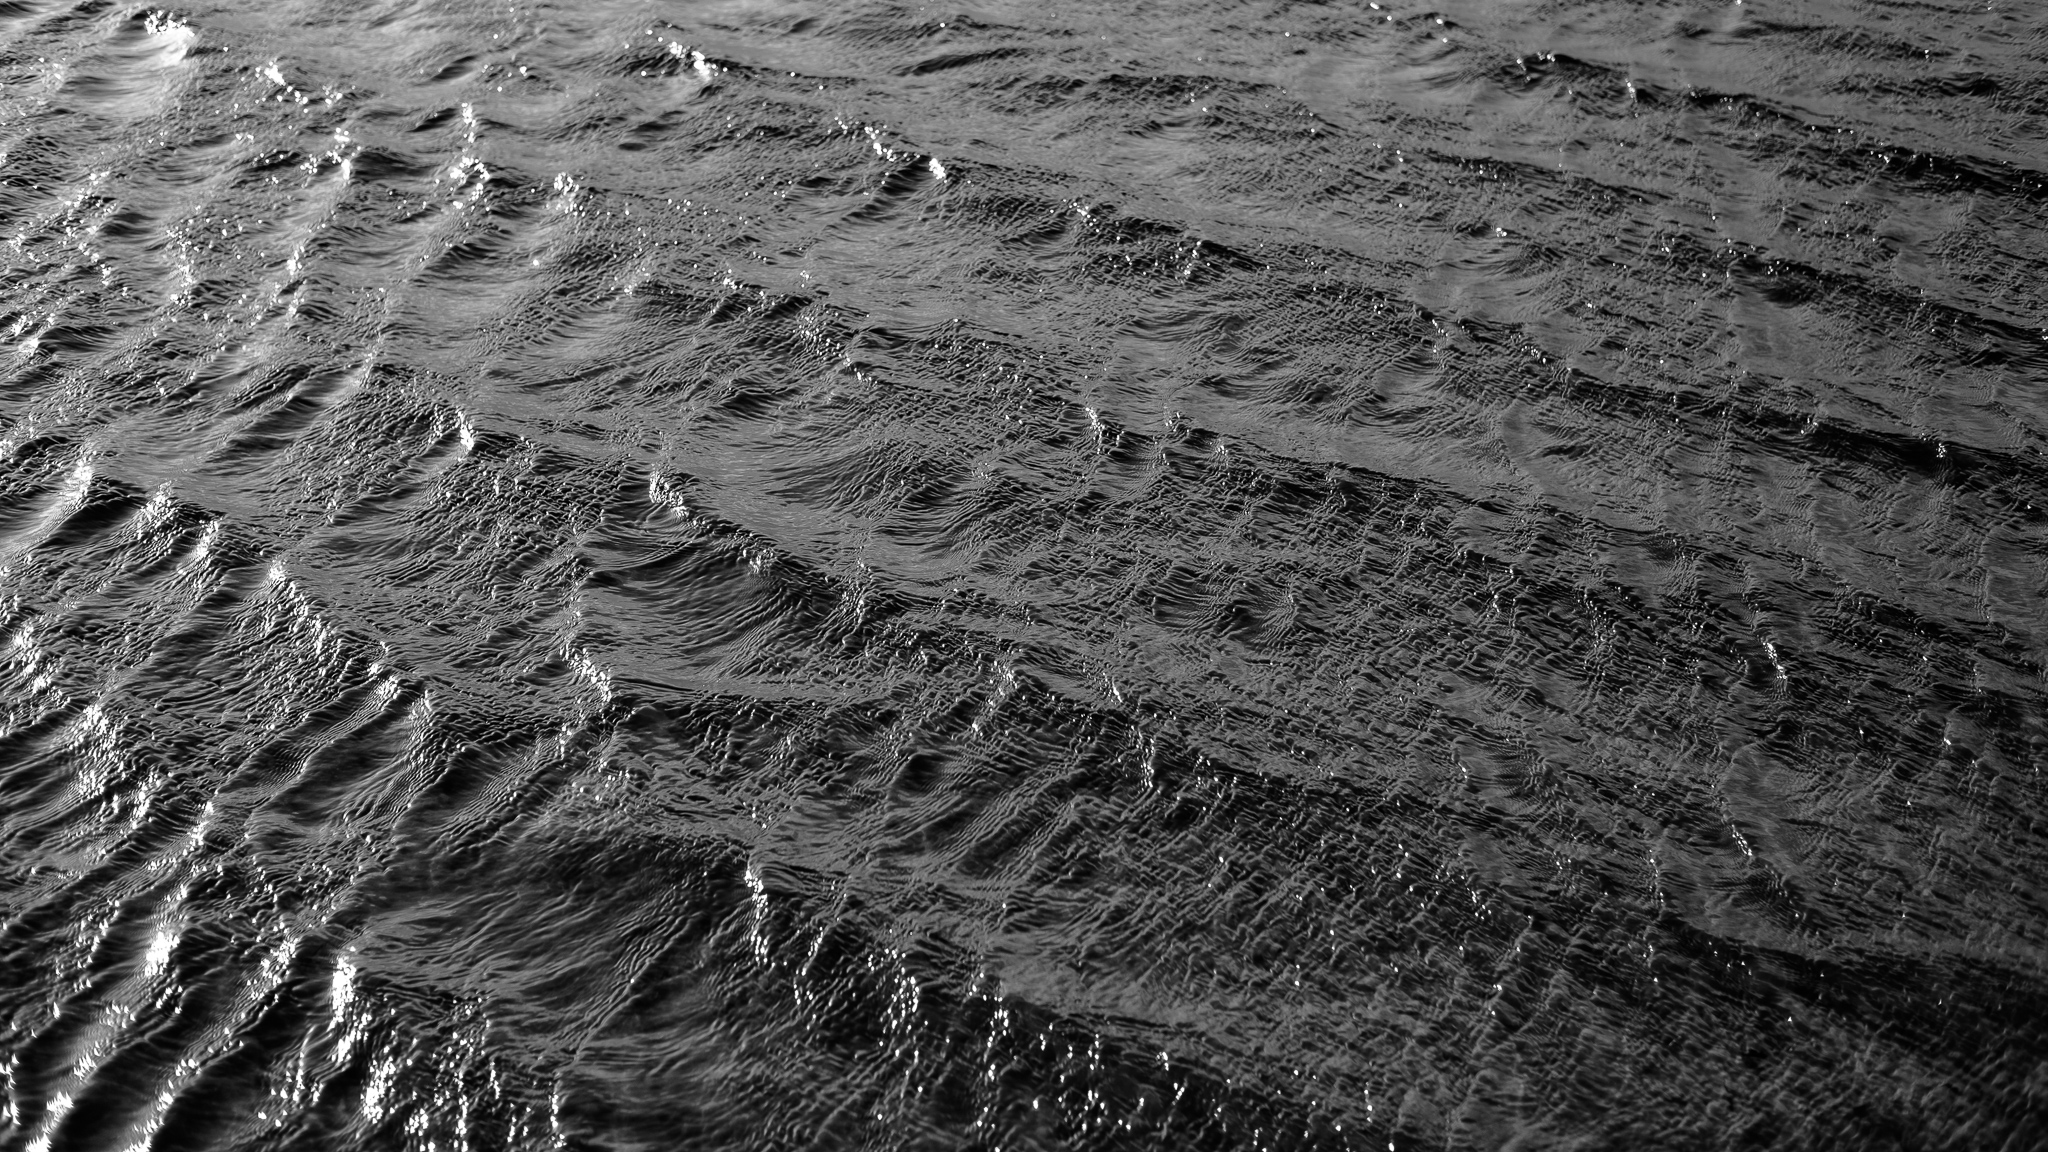 Schwarz-weiß Aufnahme von kleineren Wellen, die über die Oberfläche ziehen, von links reflektiert die Sonne in den Wellenkämmen